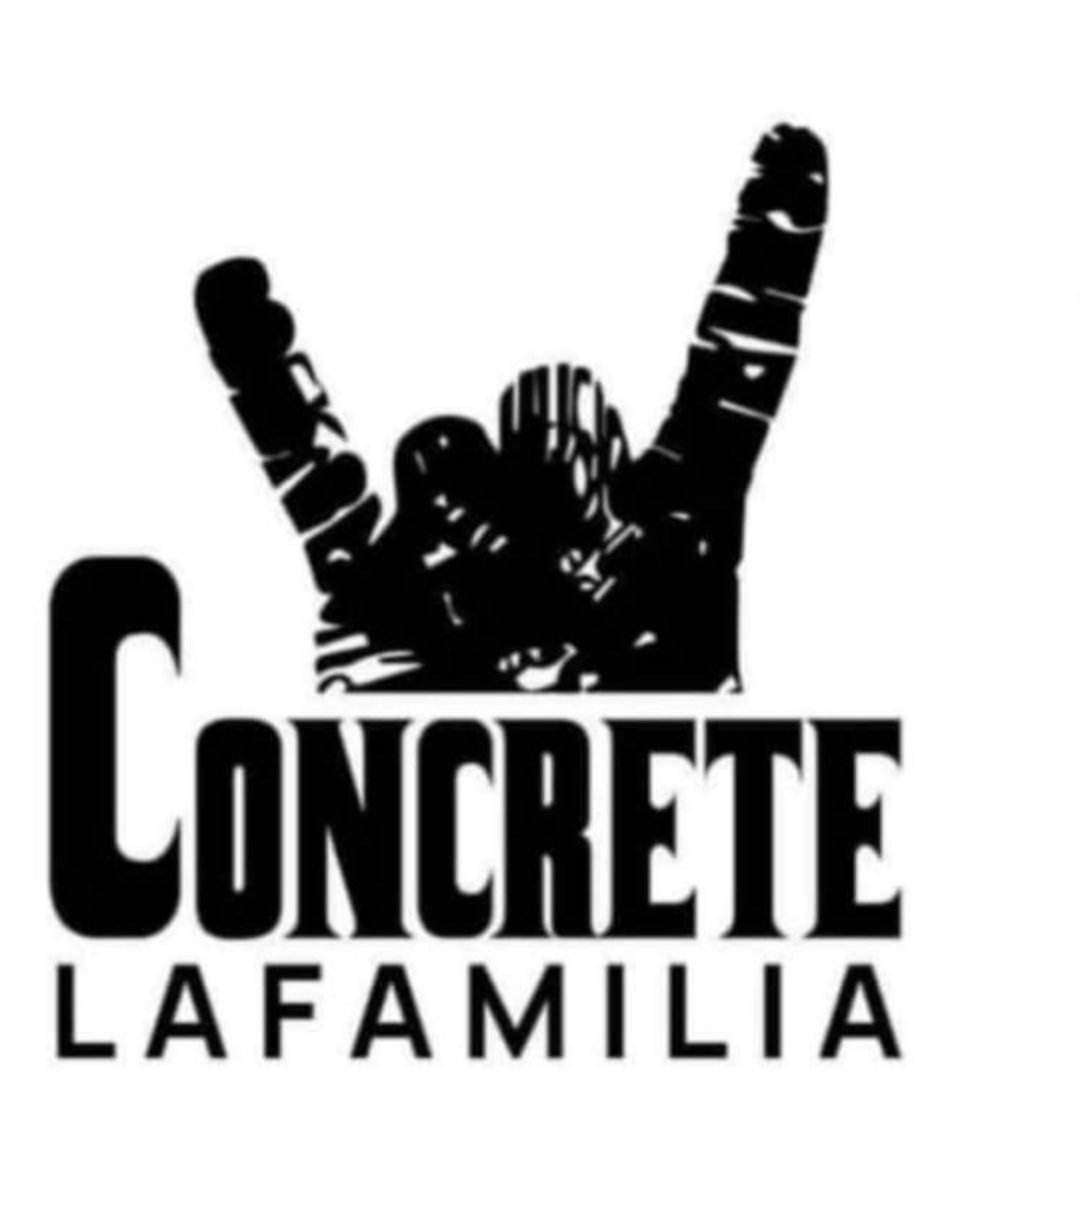 Concrete Lafamila